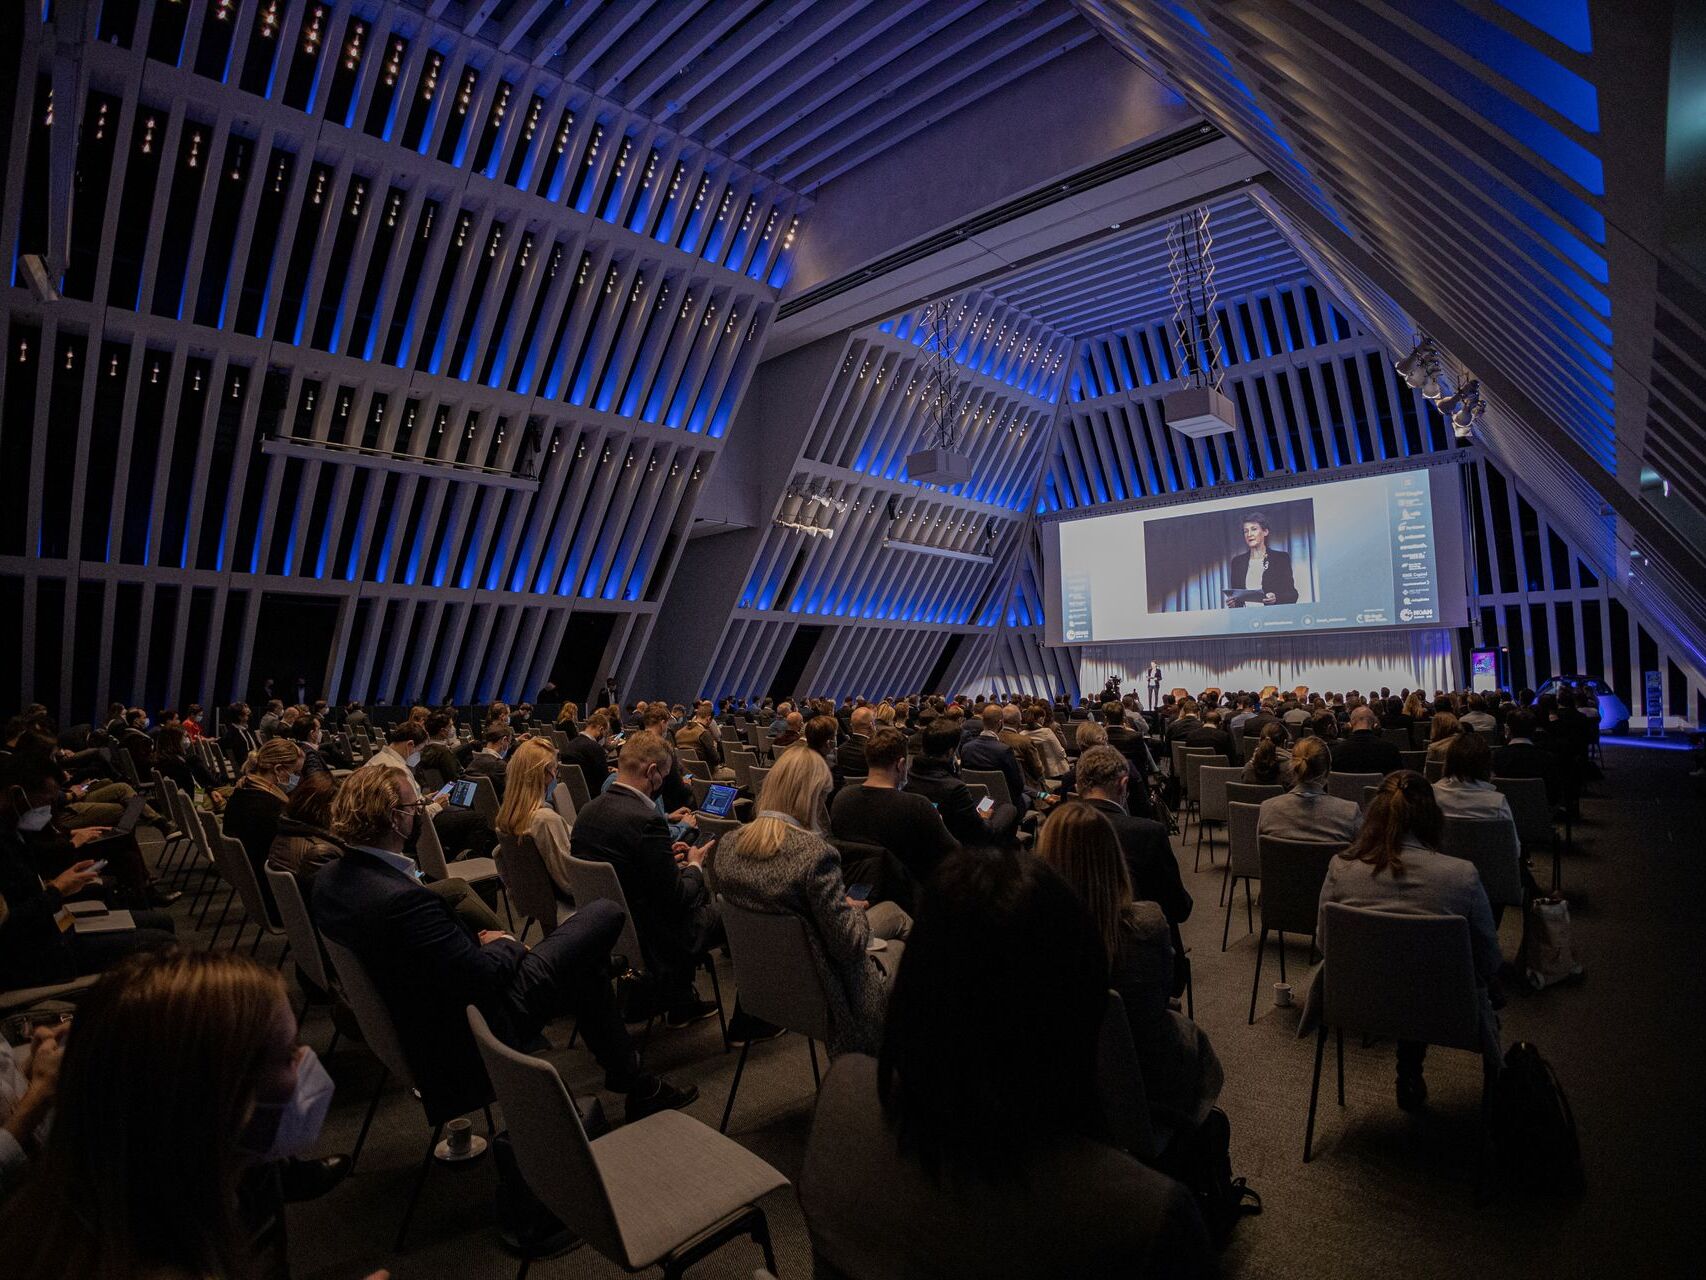 Public et intervenants présents à "The Circle" à Zurich le 6 décembre à l'occasion de la première journée de la "NOAH Conference" 2021 : Simonetta Sommaruga, cheffe du Département fédéral de l'environnement, des transports, de l'énergie et de la communication (DETEC)